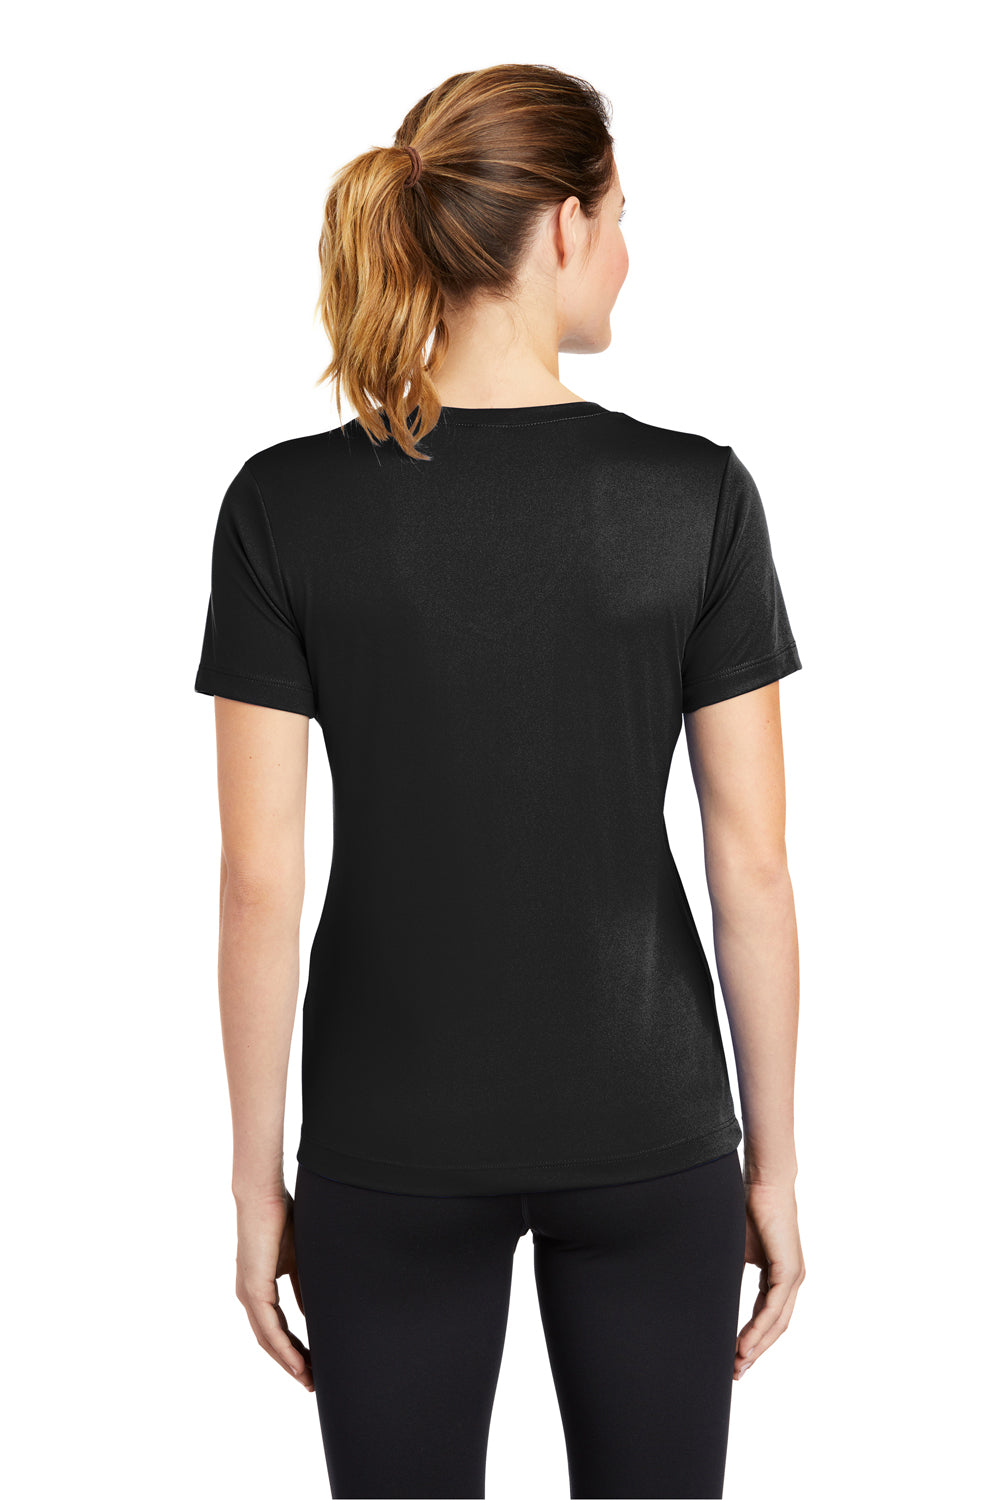 Sport-Tek LST353 Womens Competitor Moisture Wicking Short Sleeve V-Neck T-Shirt Black Back